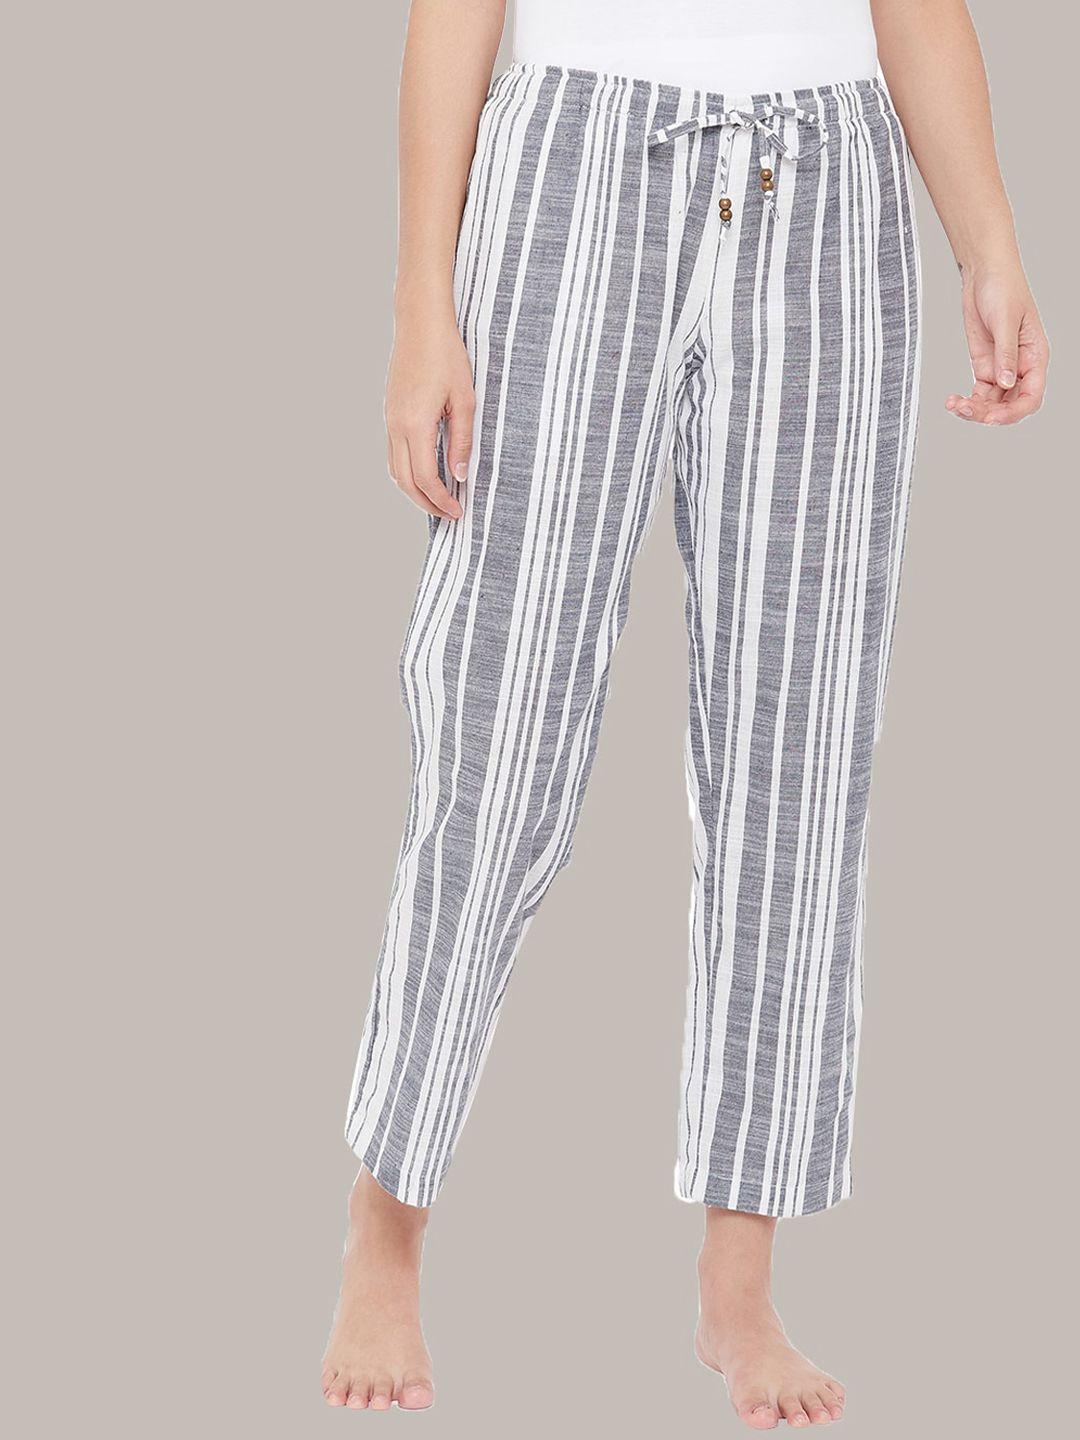 style shoes women grey & white striped lounge pants